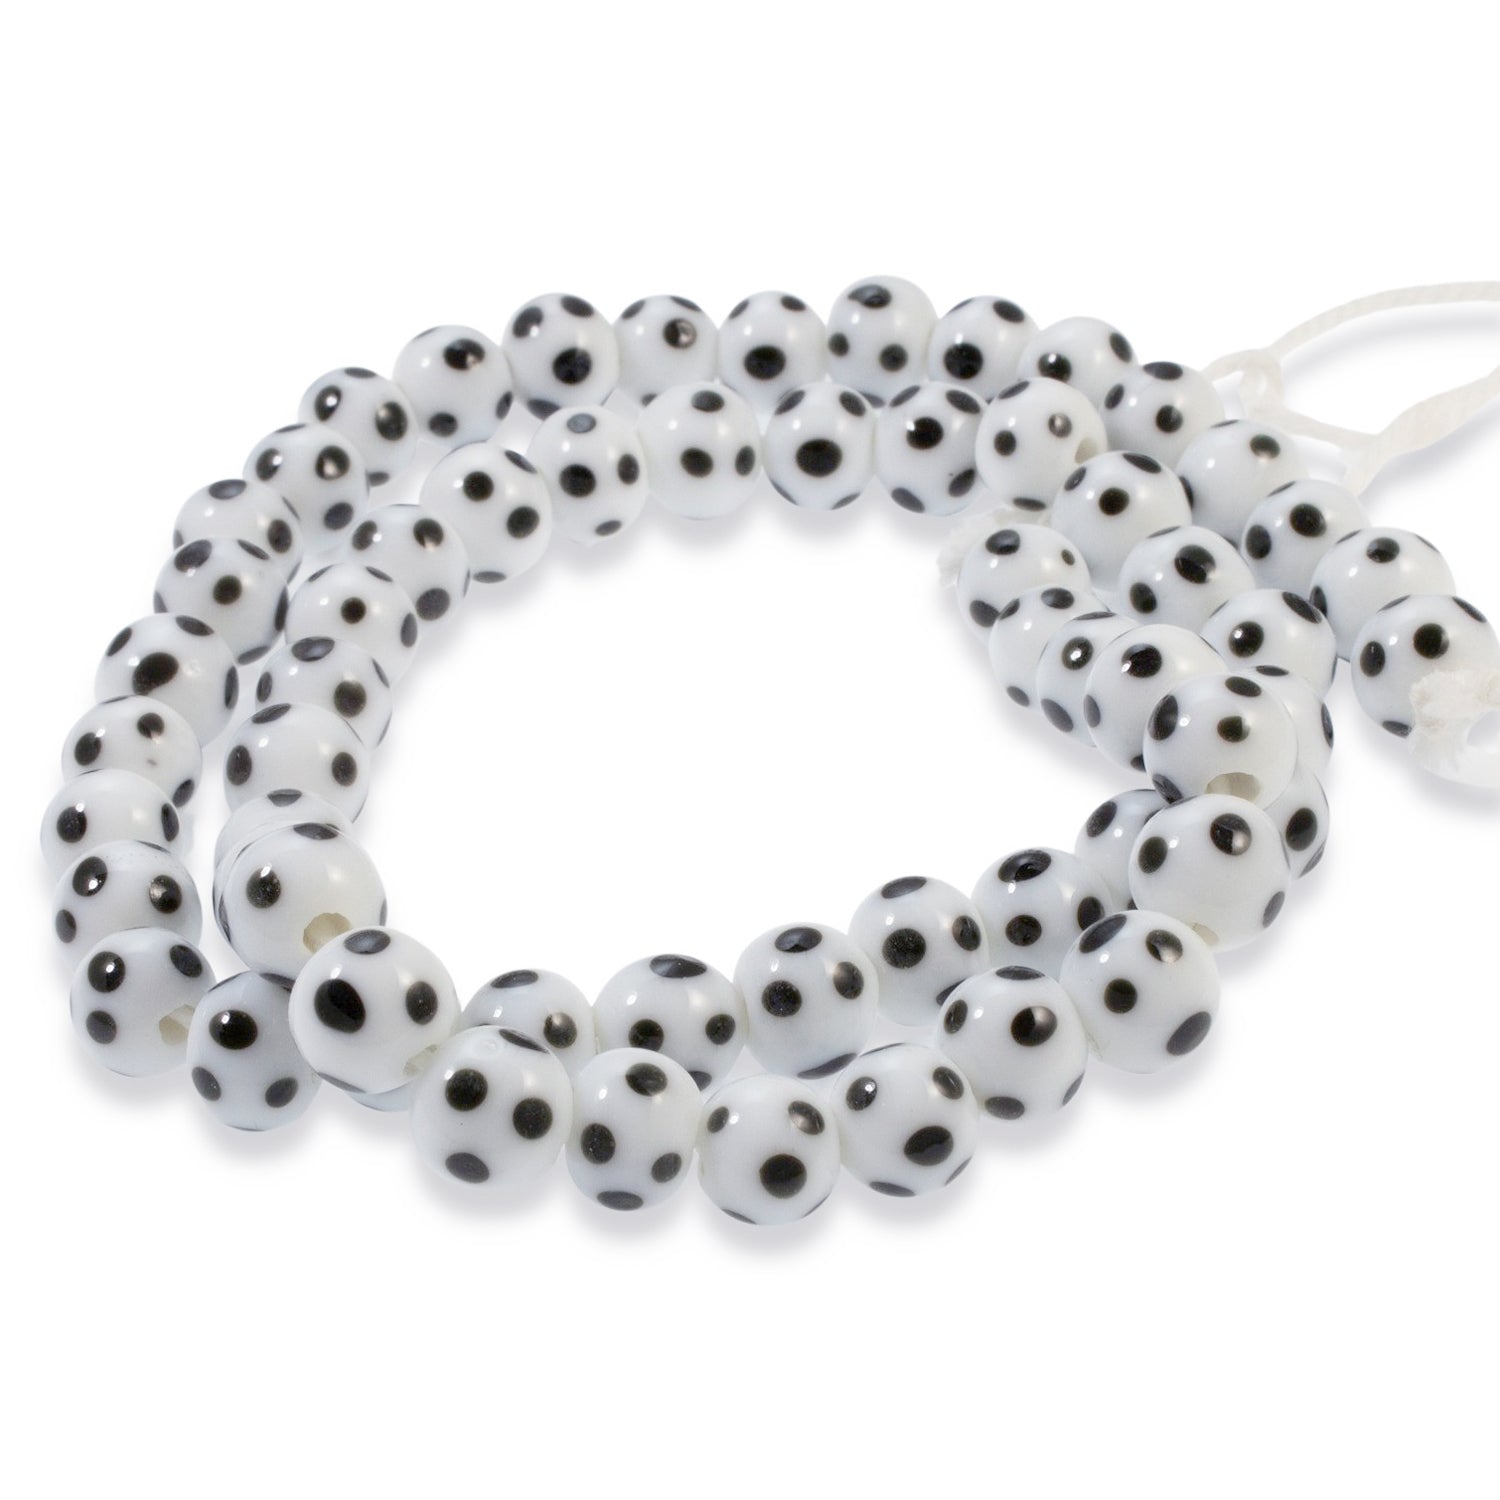 Zig-Zag Beaded Bracelet Kit with 2-Hole Glass Beads (Black & White)